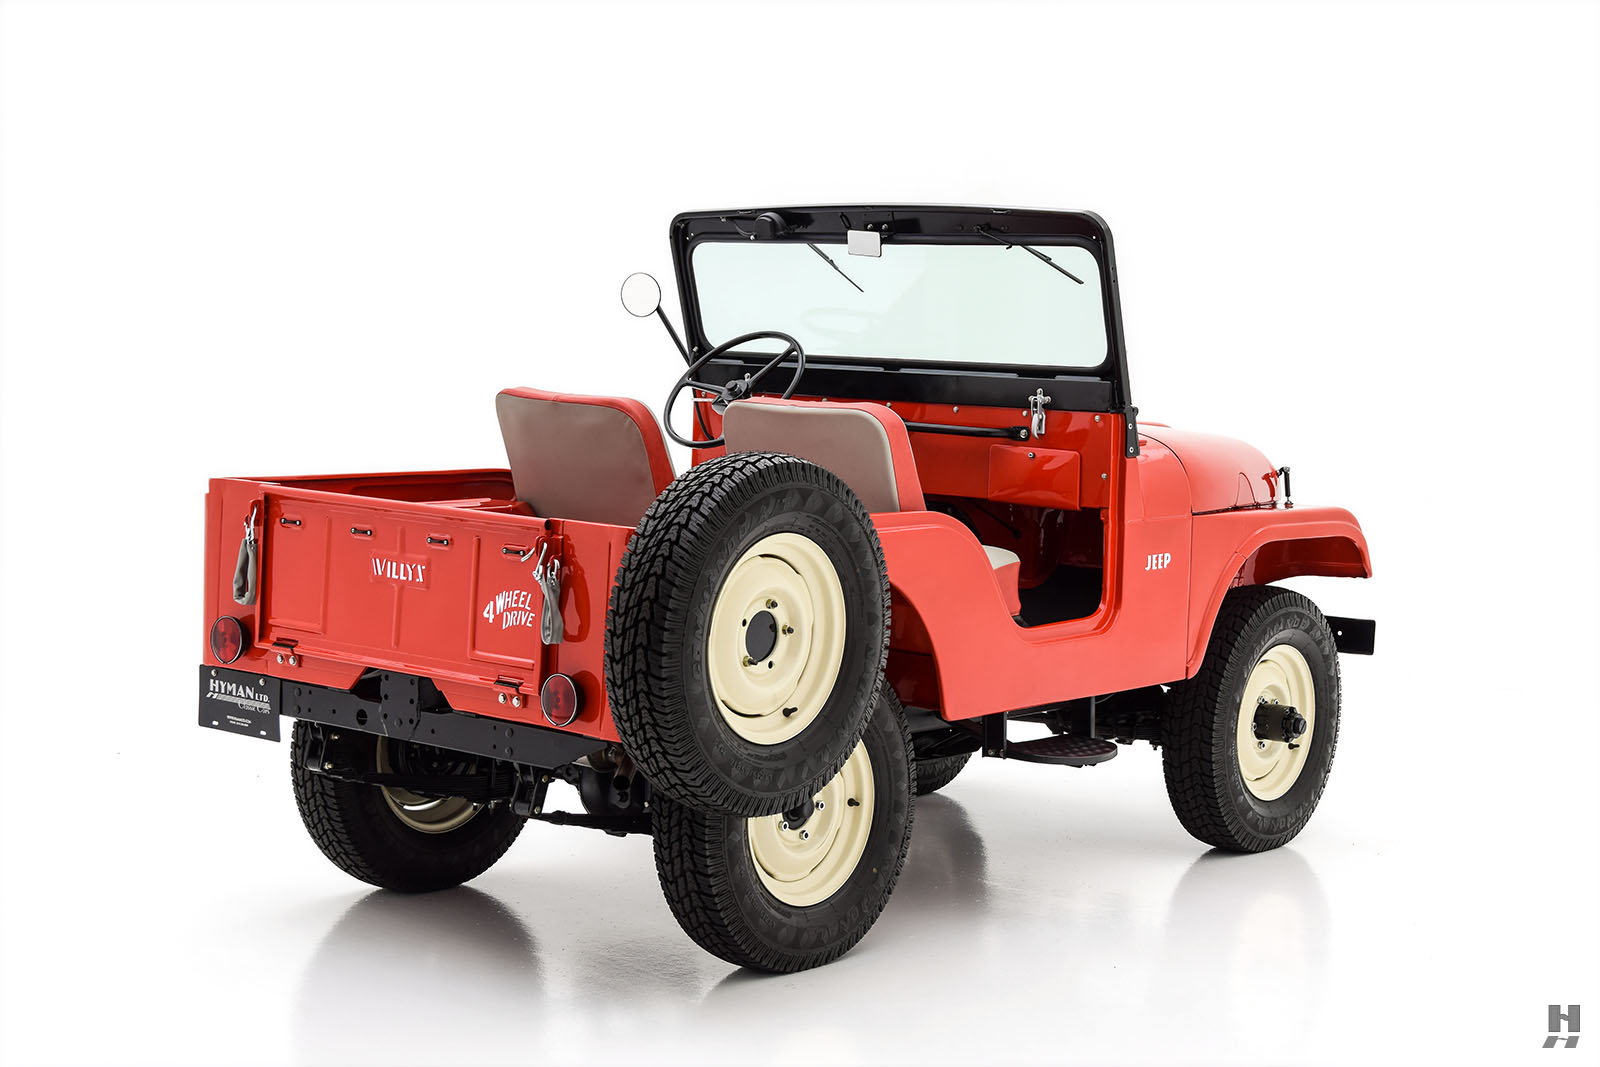 1958 willys-jeep cj-5 1/4 ton